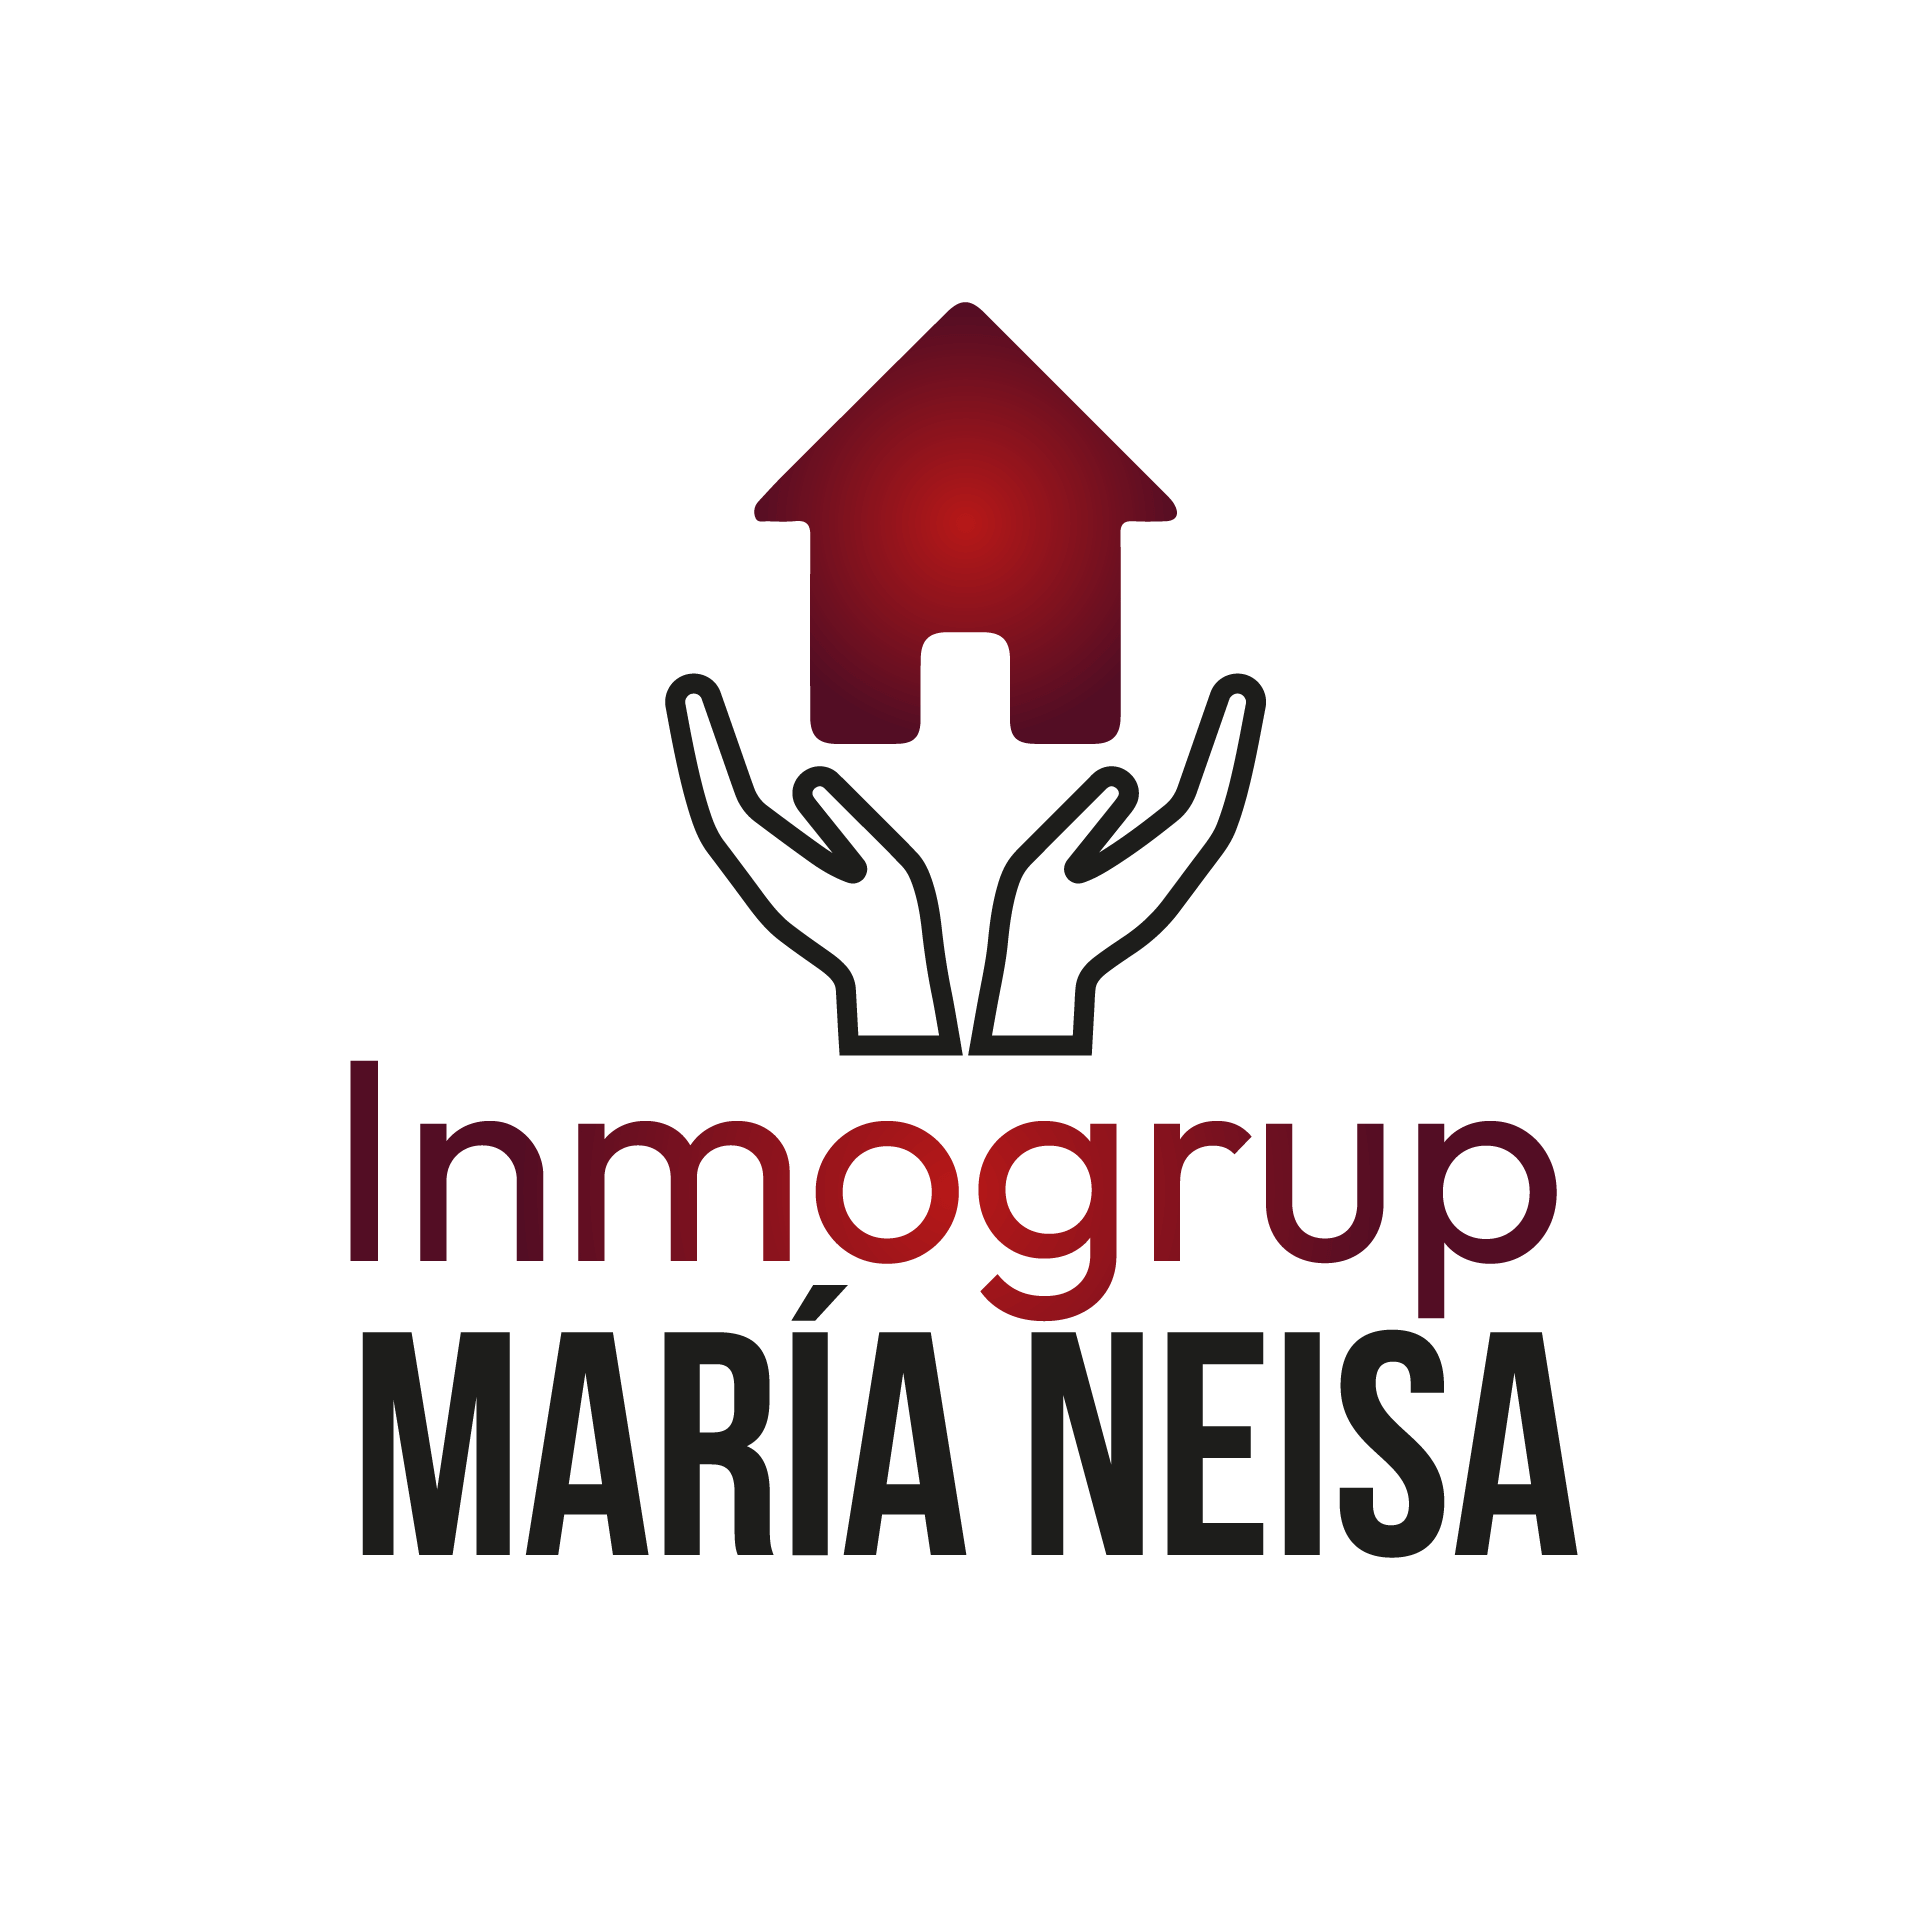 Inmogrup Maria Neisa